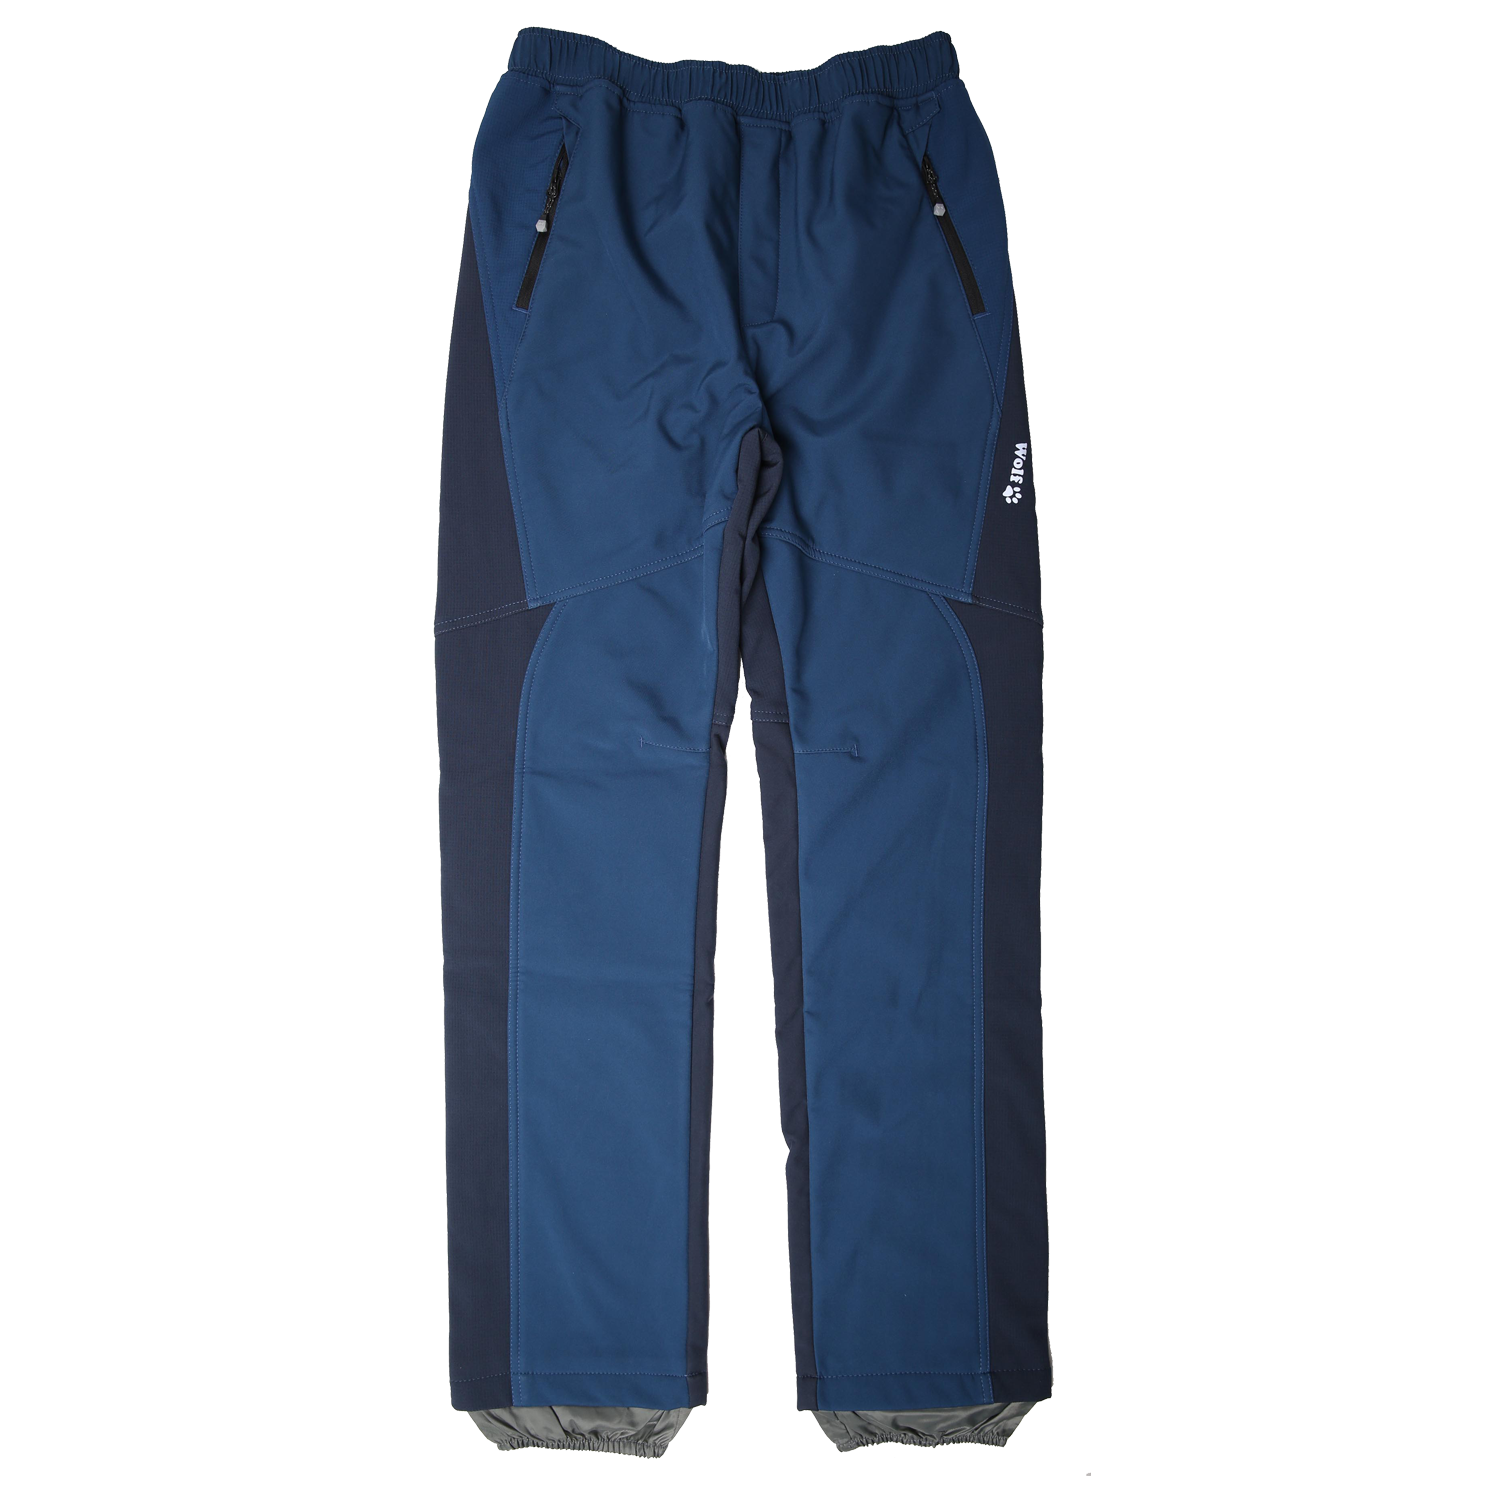 Chlapecké softshellové kalhoty, zateplené - Wolf B2298, tmavě modrá/ petrol Barva: Modrá, Velikost: 176